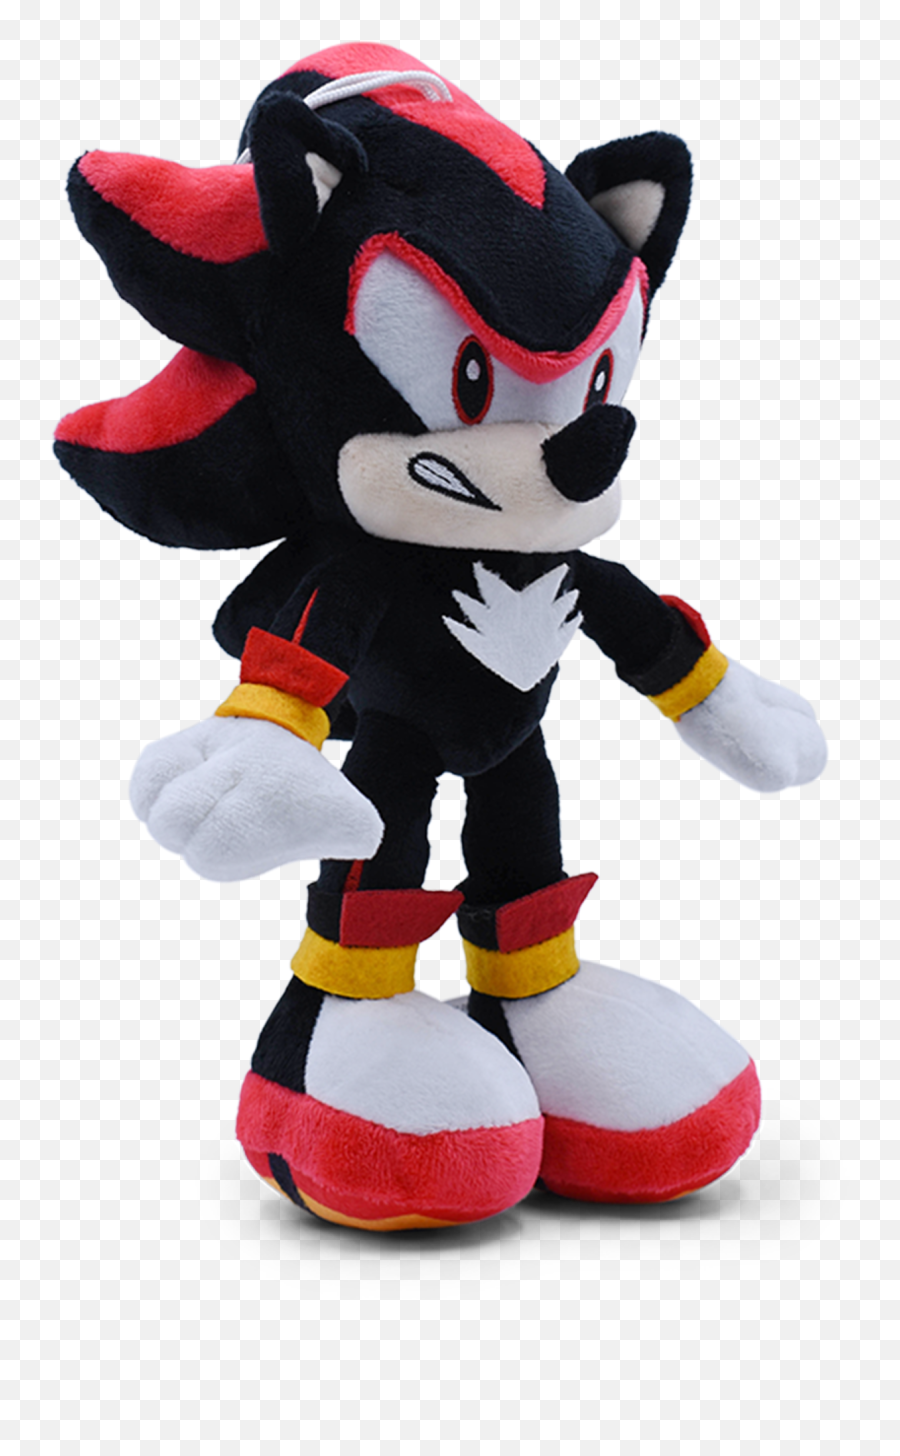 Seekfunning Sonic 11 Plush Shadow The Hedgehog Doll Toy - Sonic The Hedgehog Png,Silver The Hedgehog Icon